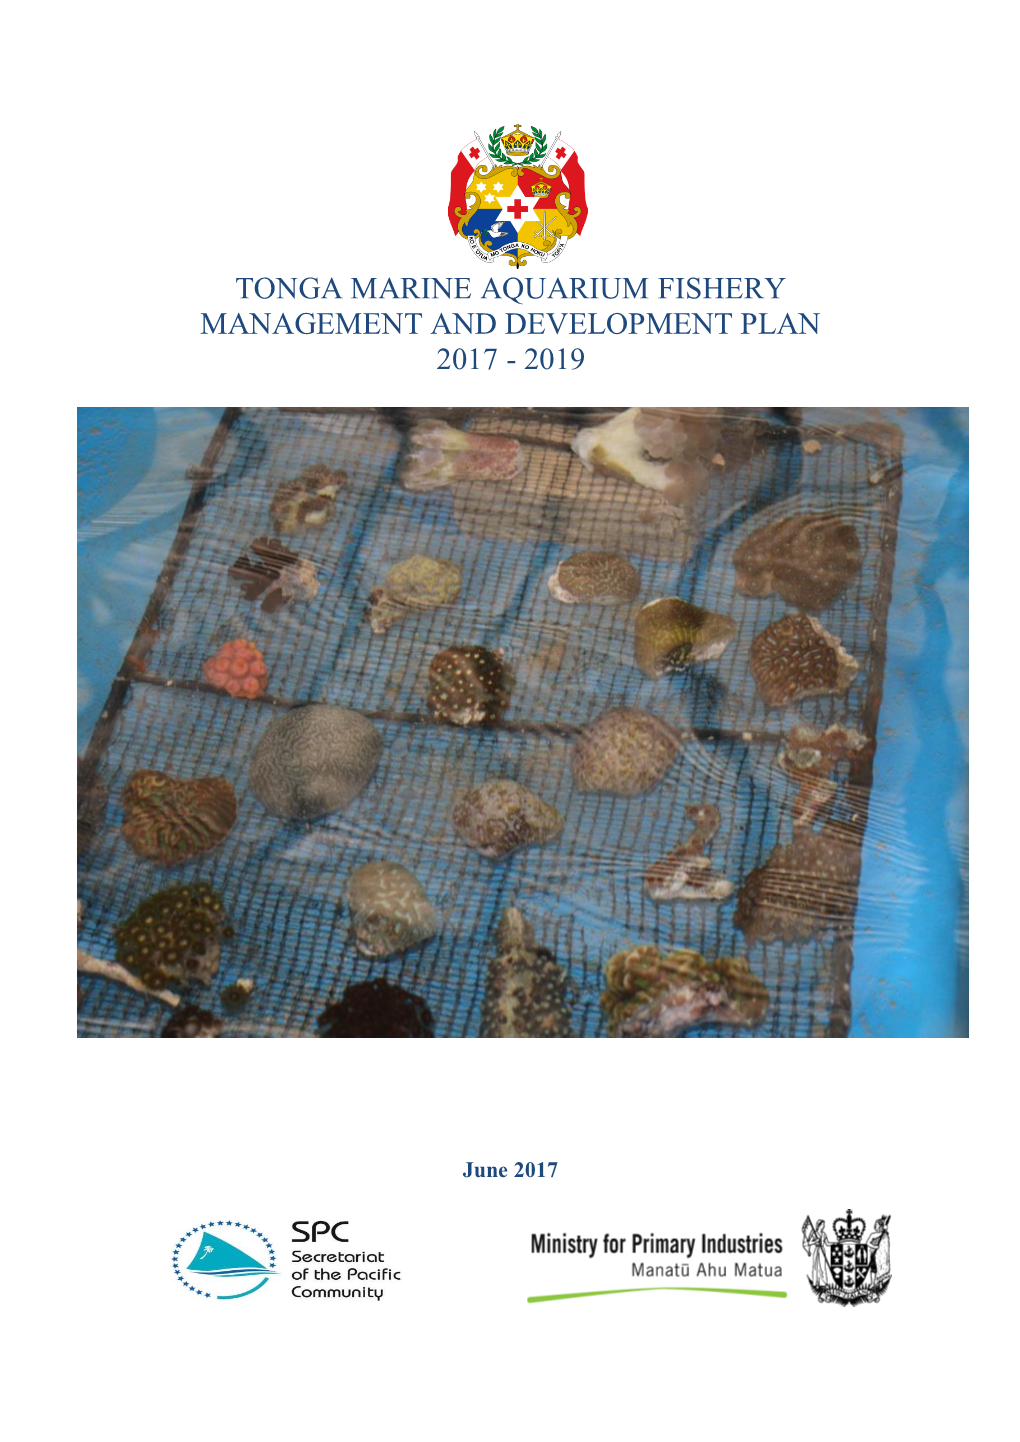 Tonga Marine Aquarium Fishery Management and Development Plan 2017 - 2019